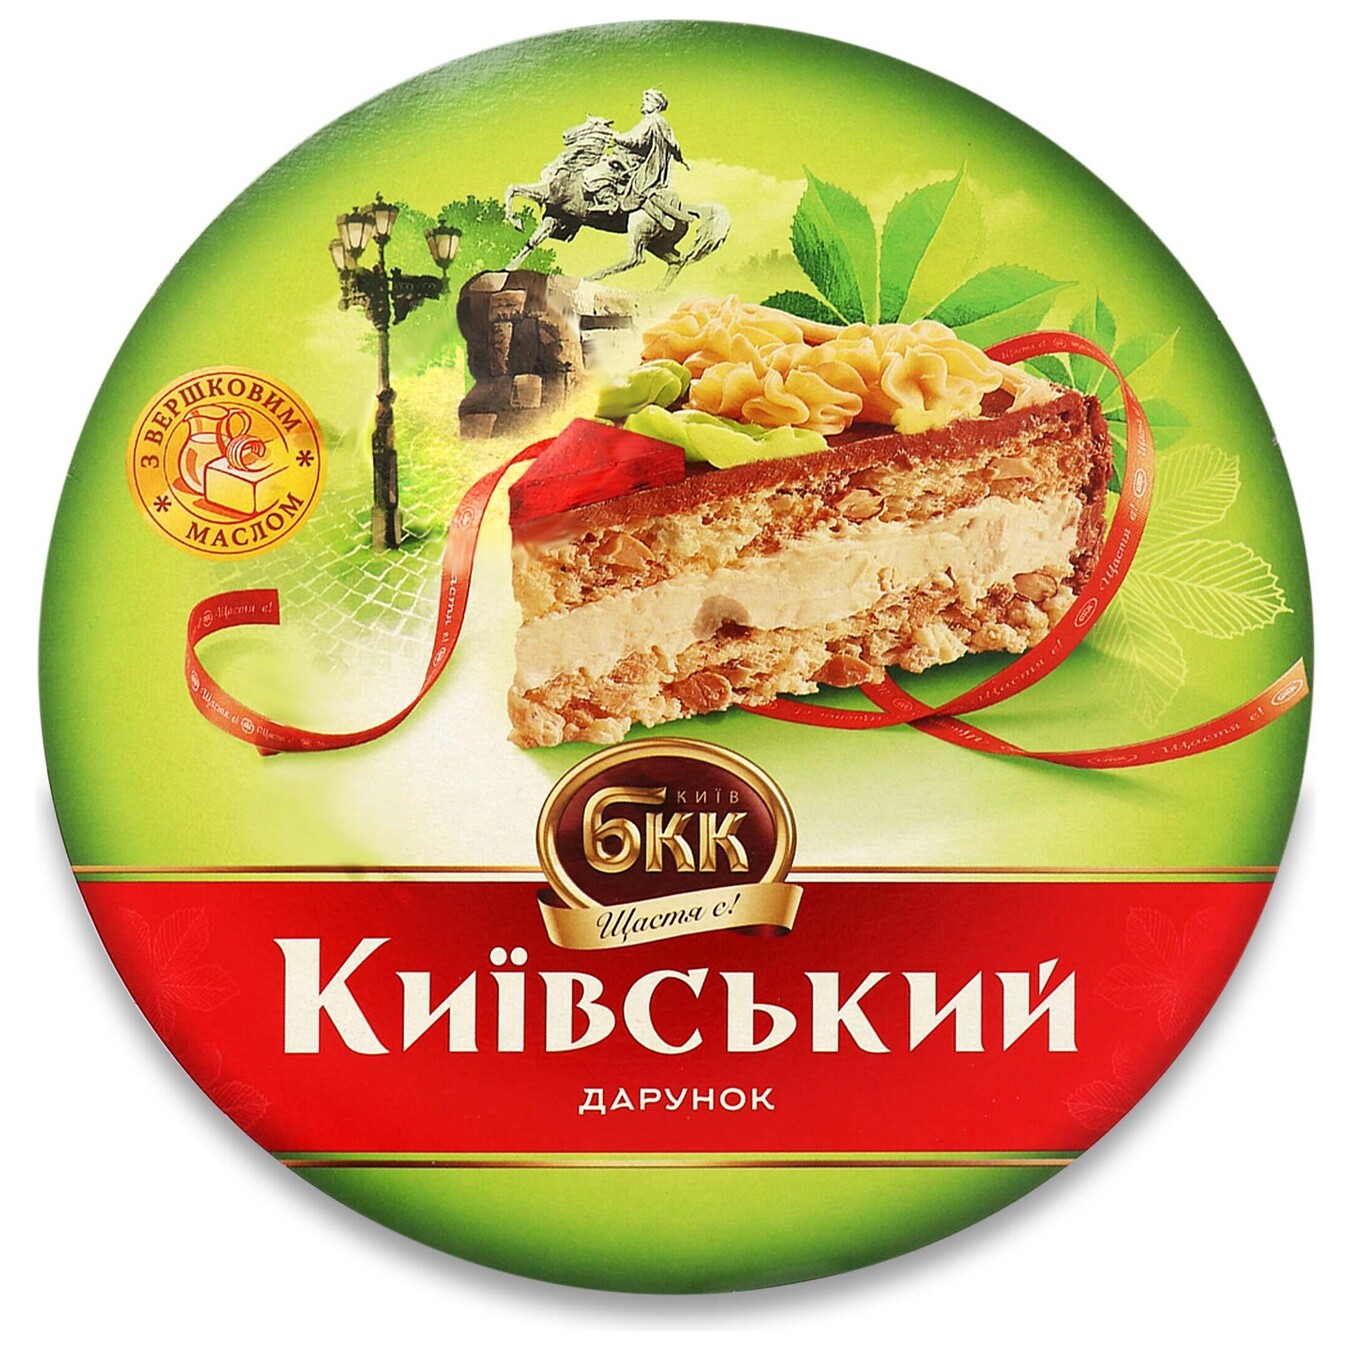 Торт БКК Киевский подарок с арахисом 450г